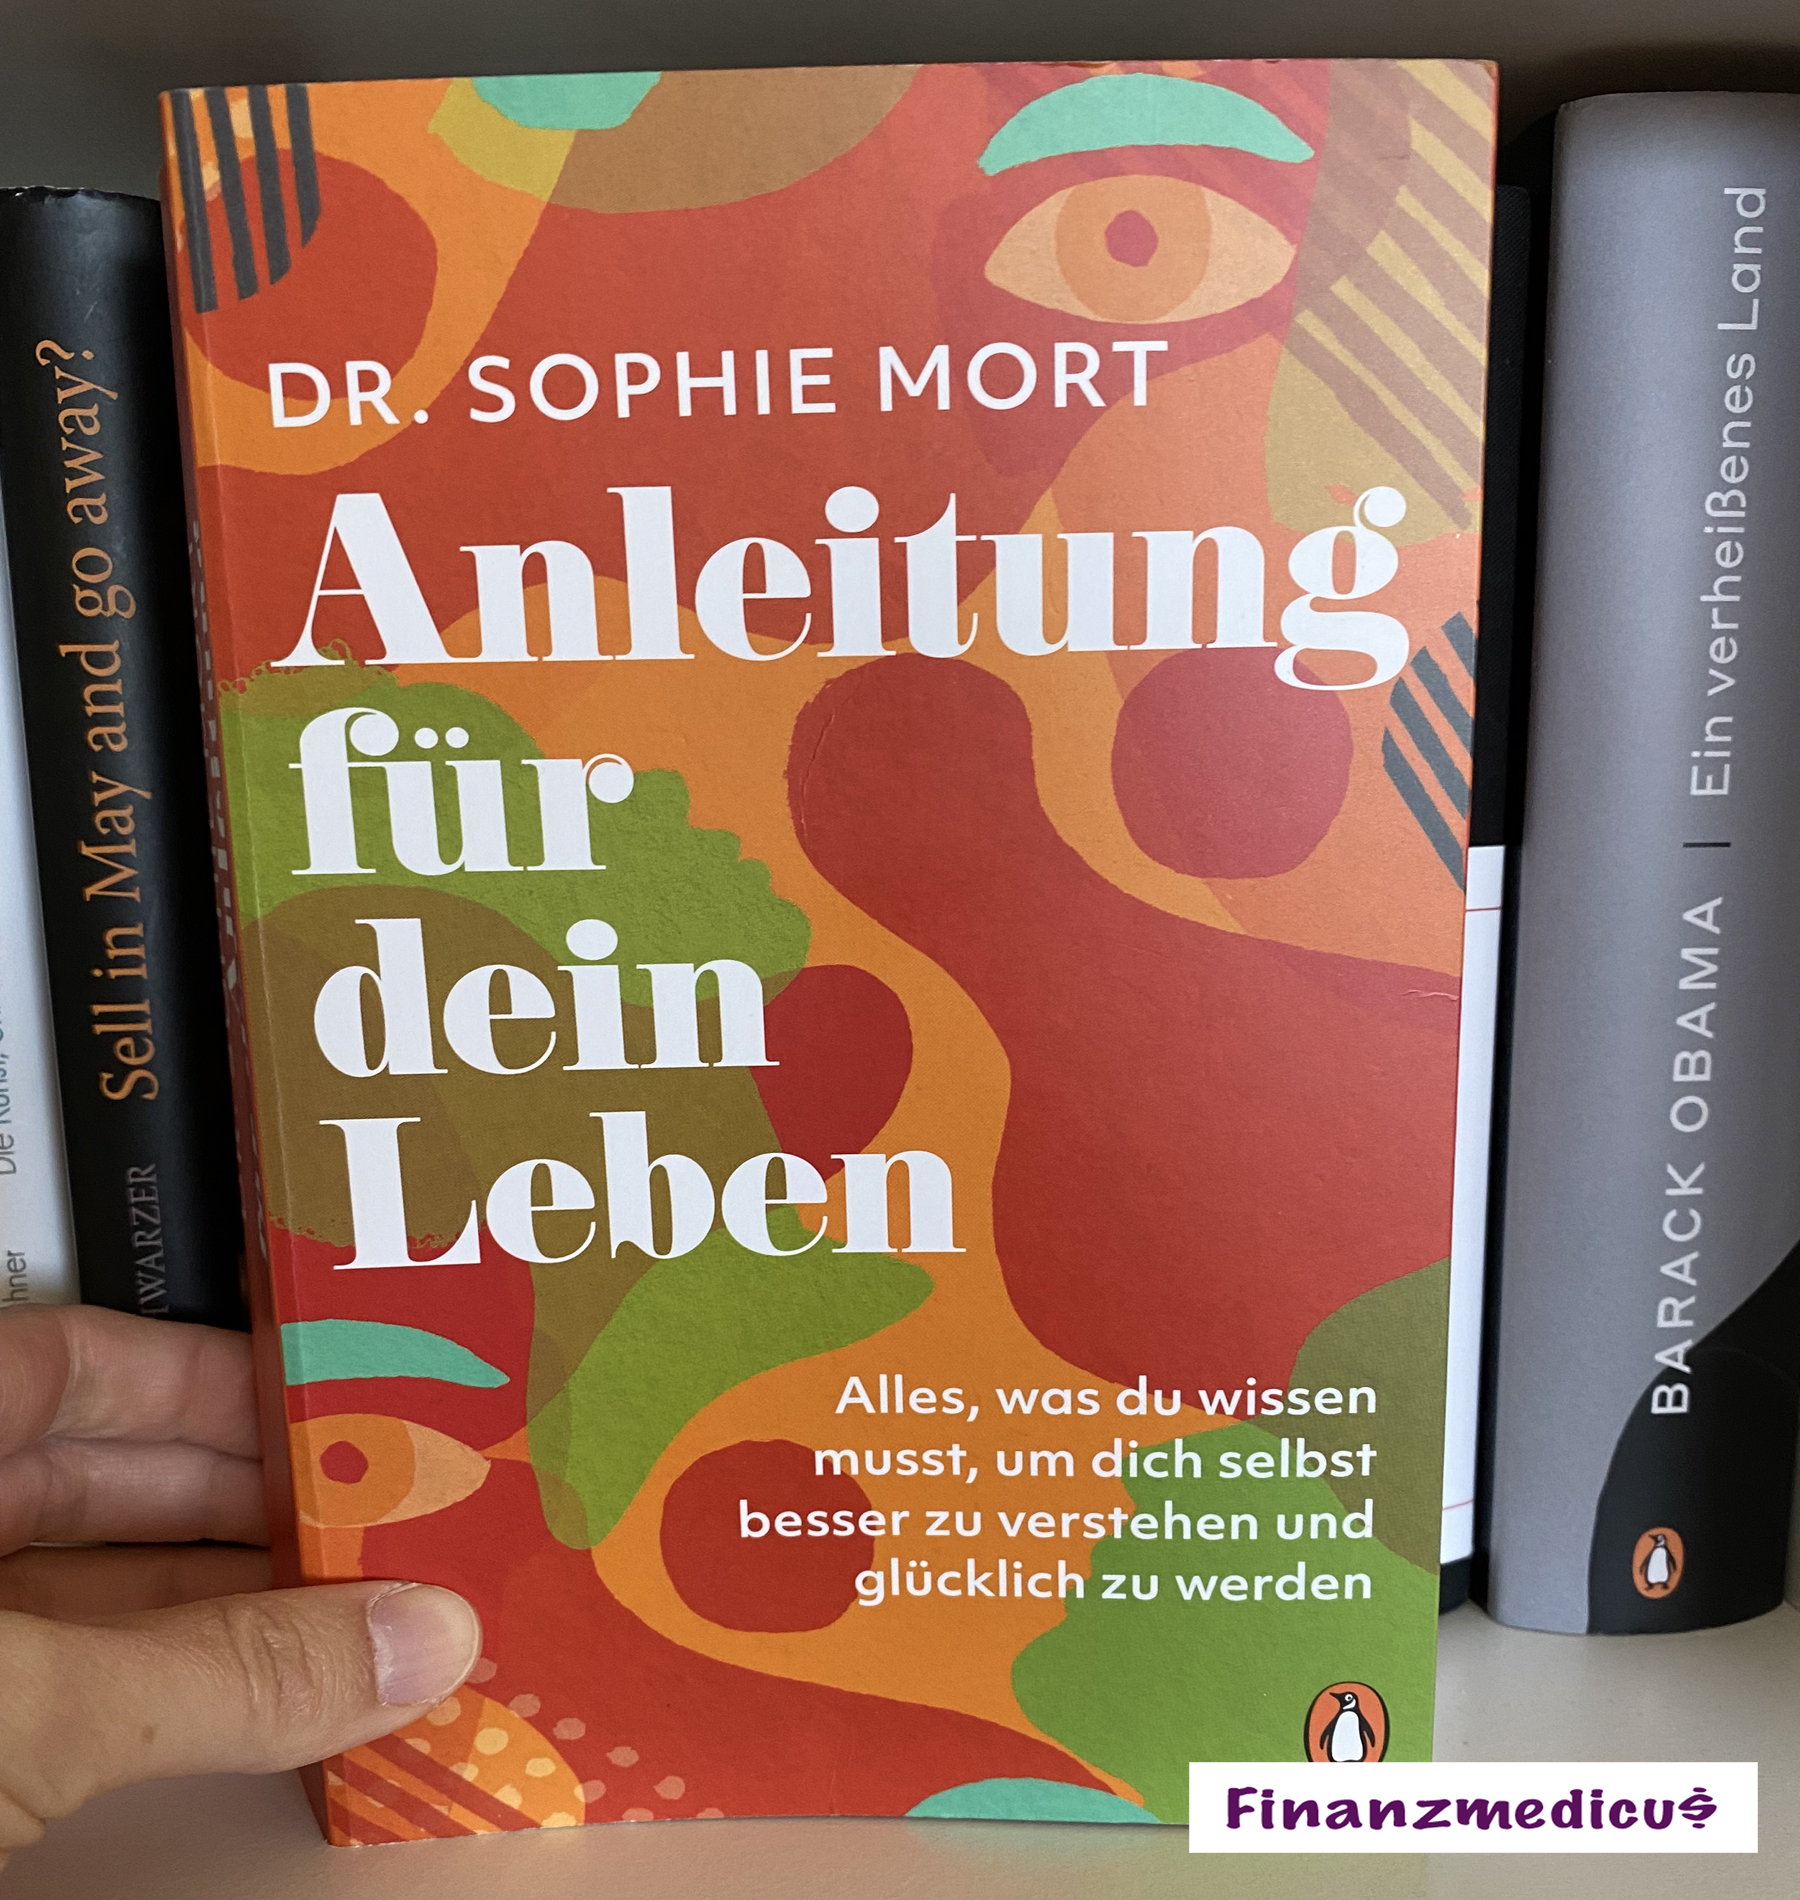 You are currently viewing Anleitung für dein Leben von Dr. Sophie Mort